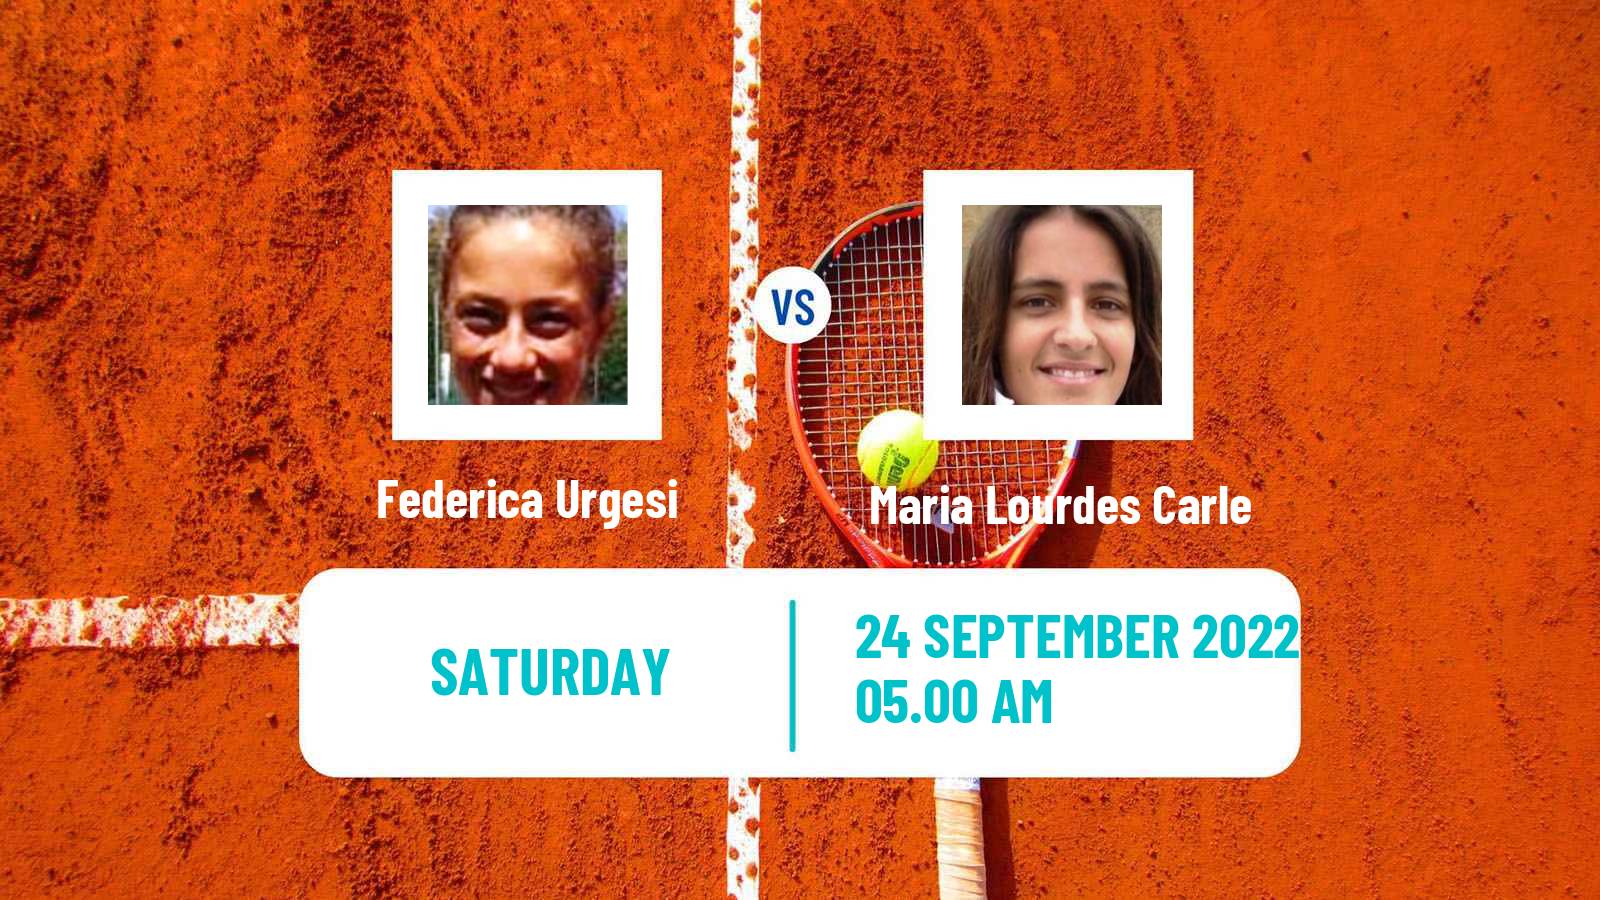 Tennis WTA Parma Federica Urgesi - Maria Lourdes Carle